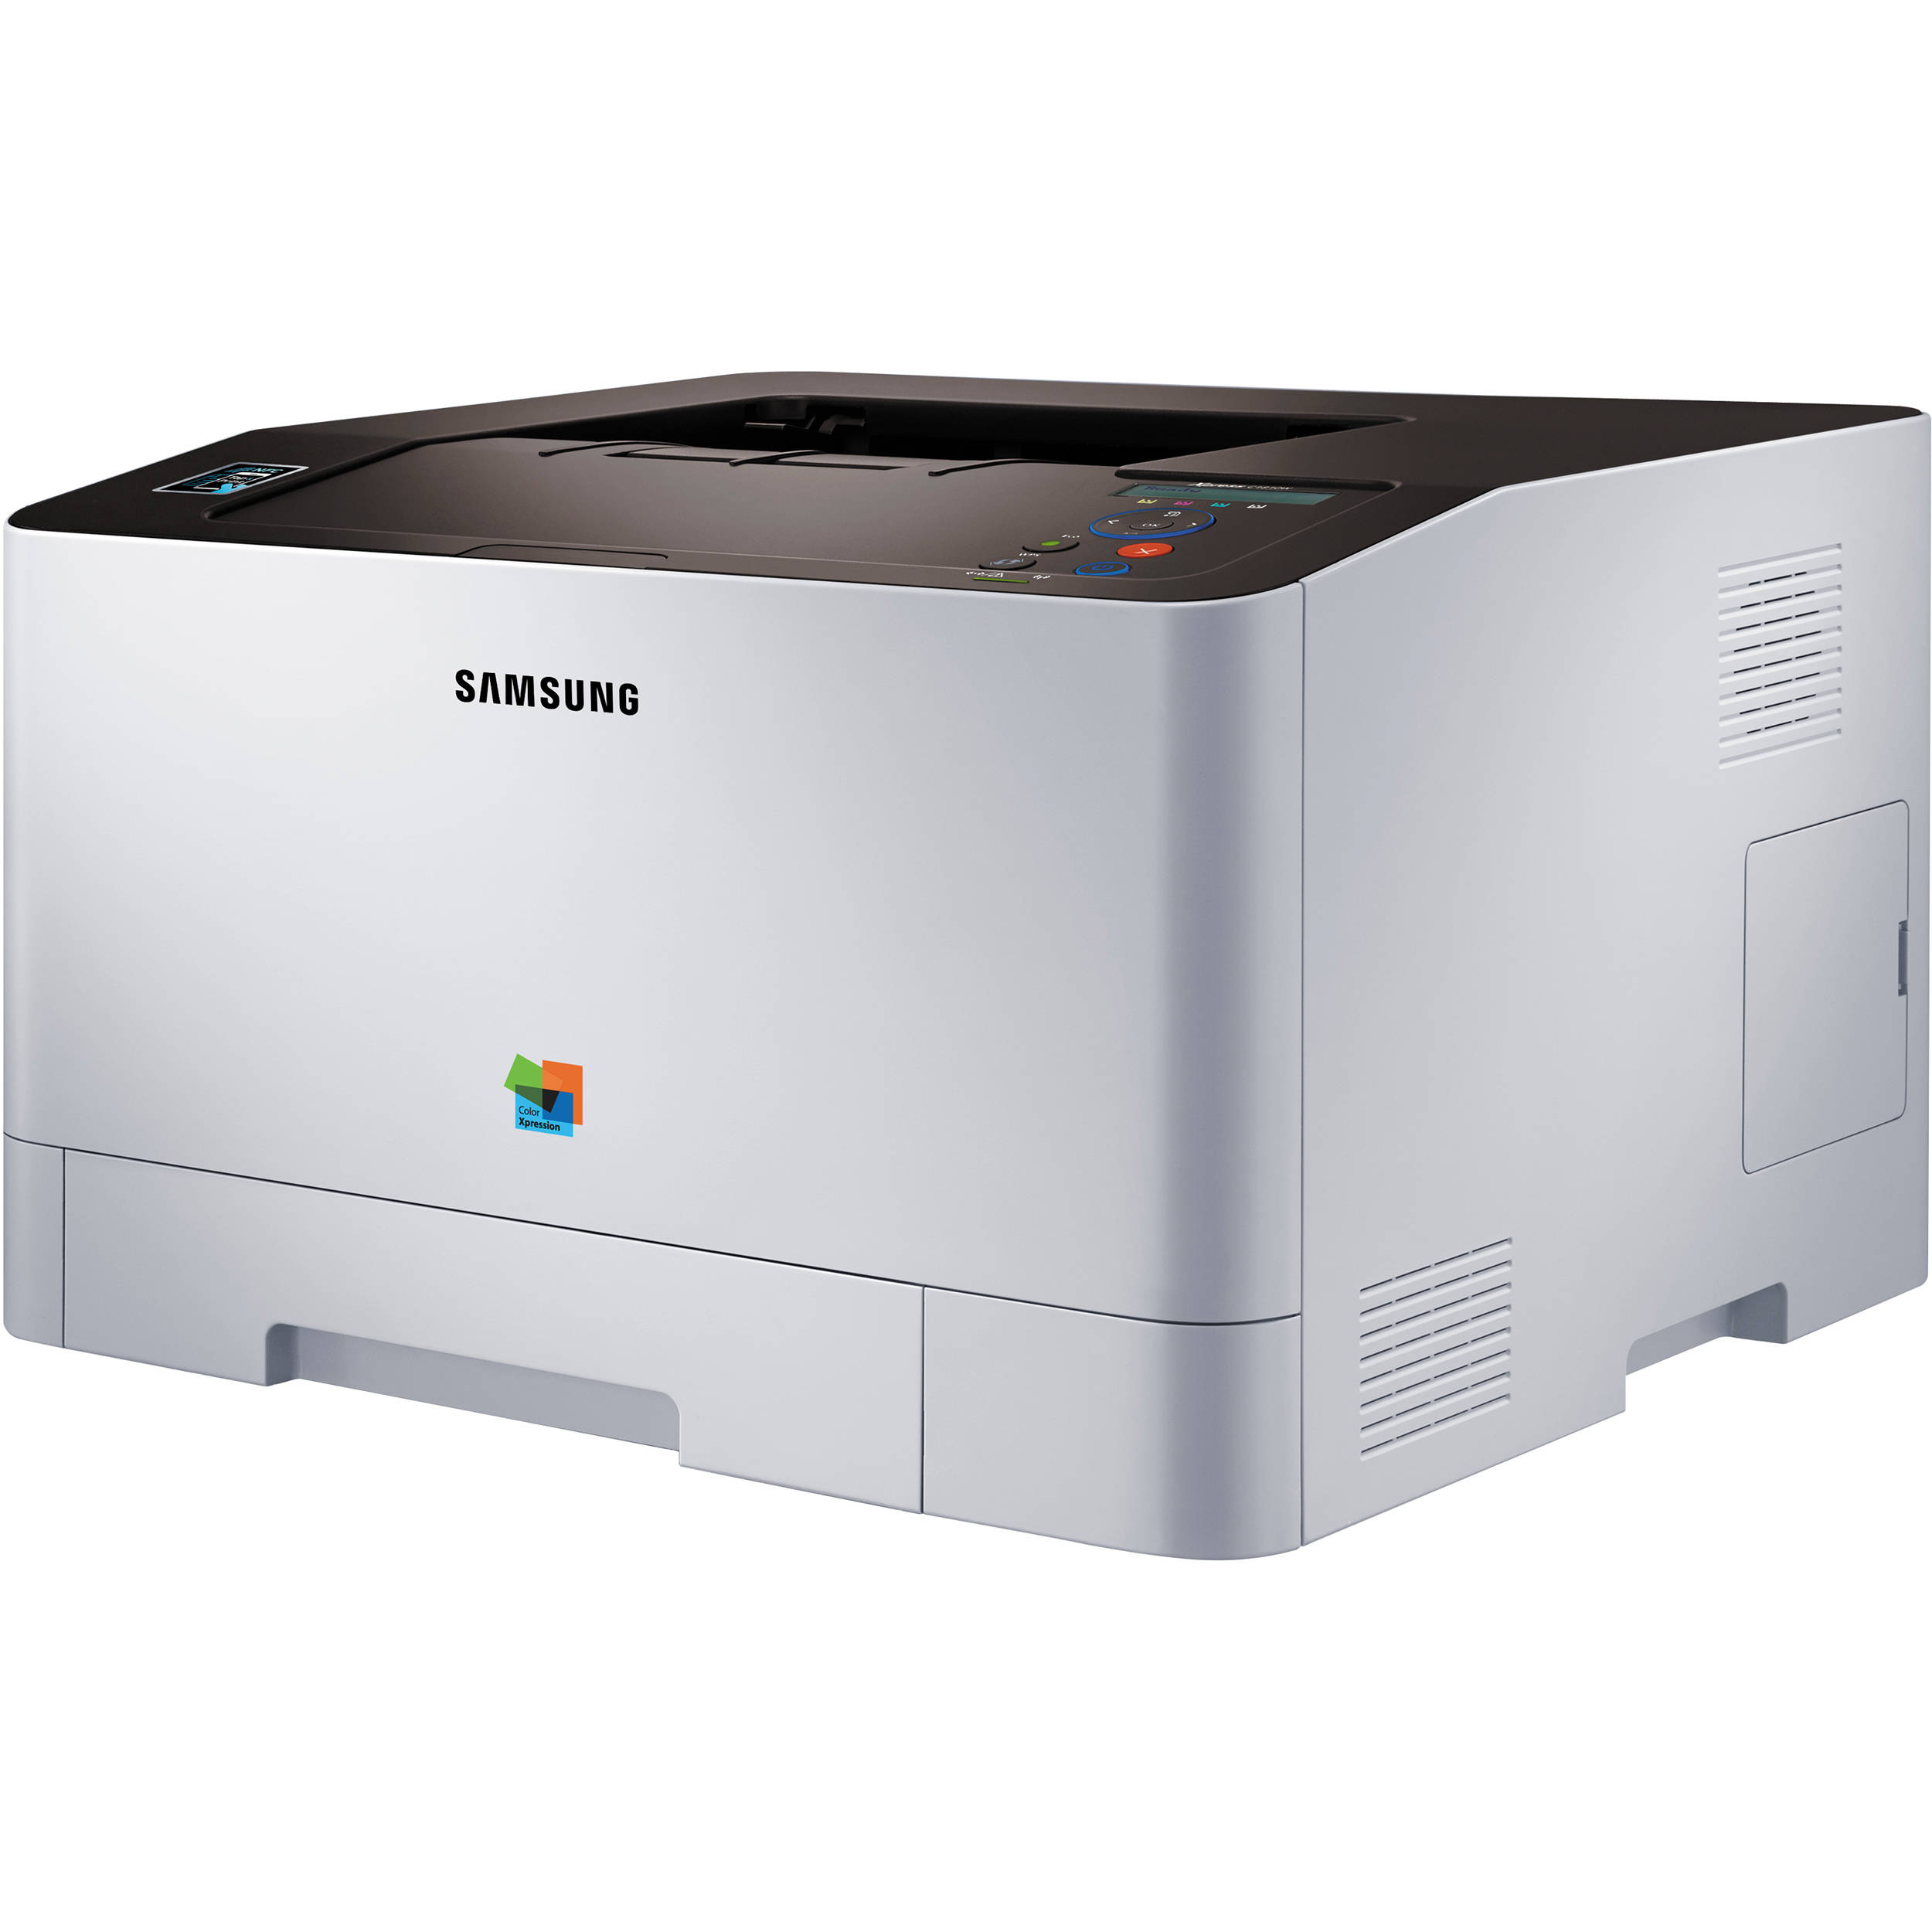 Лазерные принтеры samsung купить. Принтер лазерный Samsung SL-c1810w. Цветной лазерный принтер самсунг. Принтер самсунг с460fw. Принтер самсунг Color Xpression 2010г.